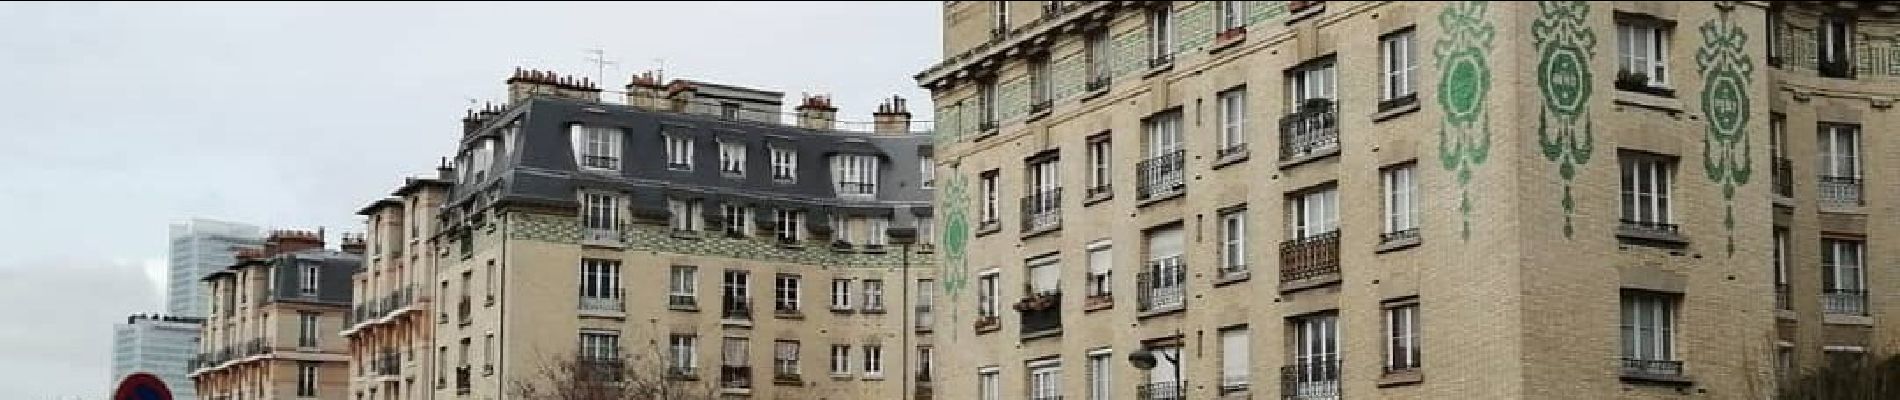 Punto di interesse Parigi - Immeuble 1907 - Photo